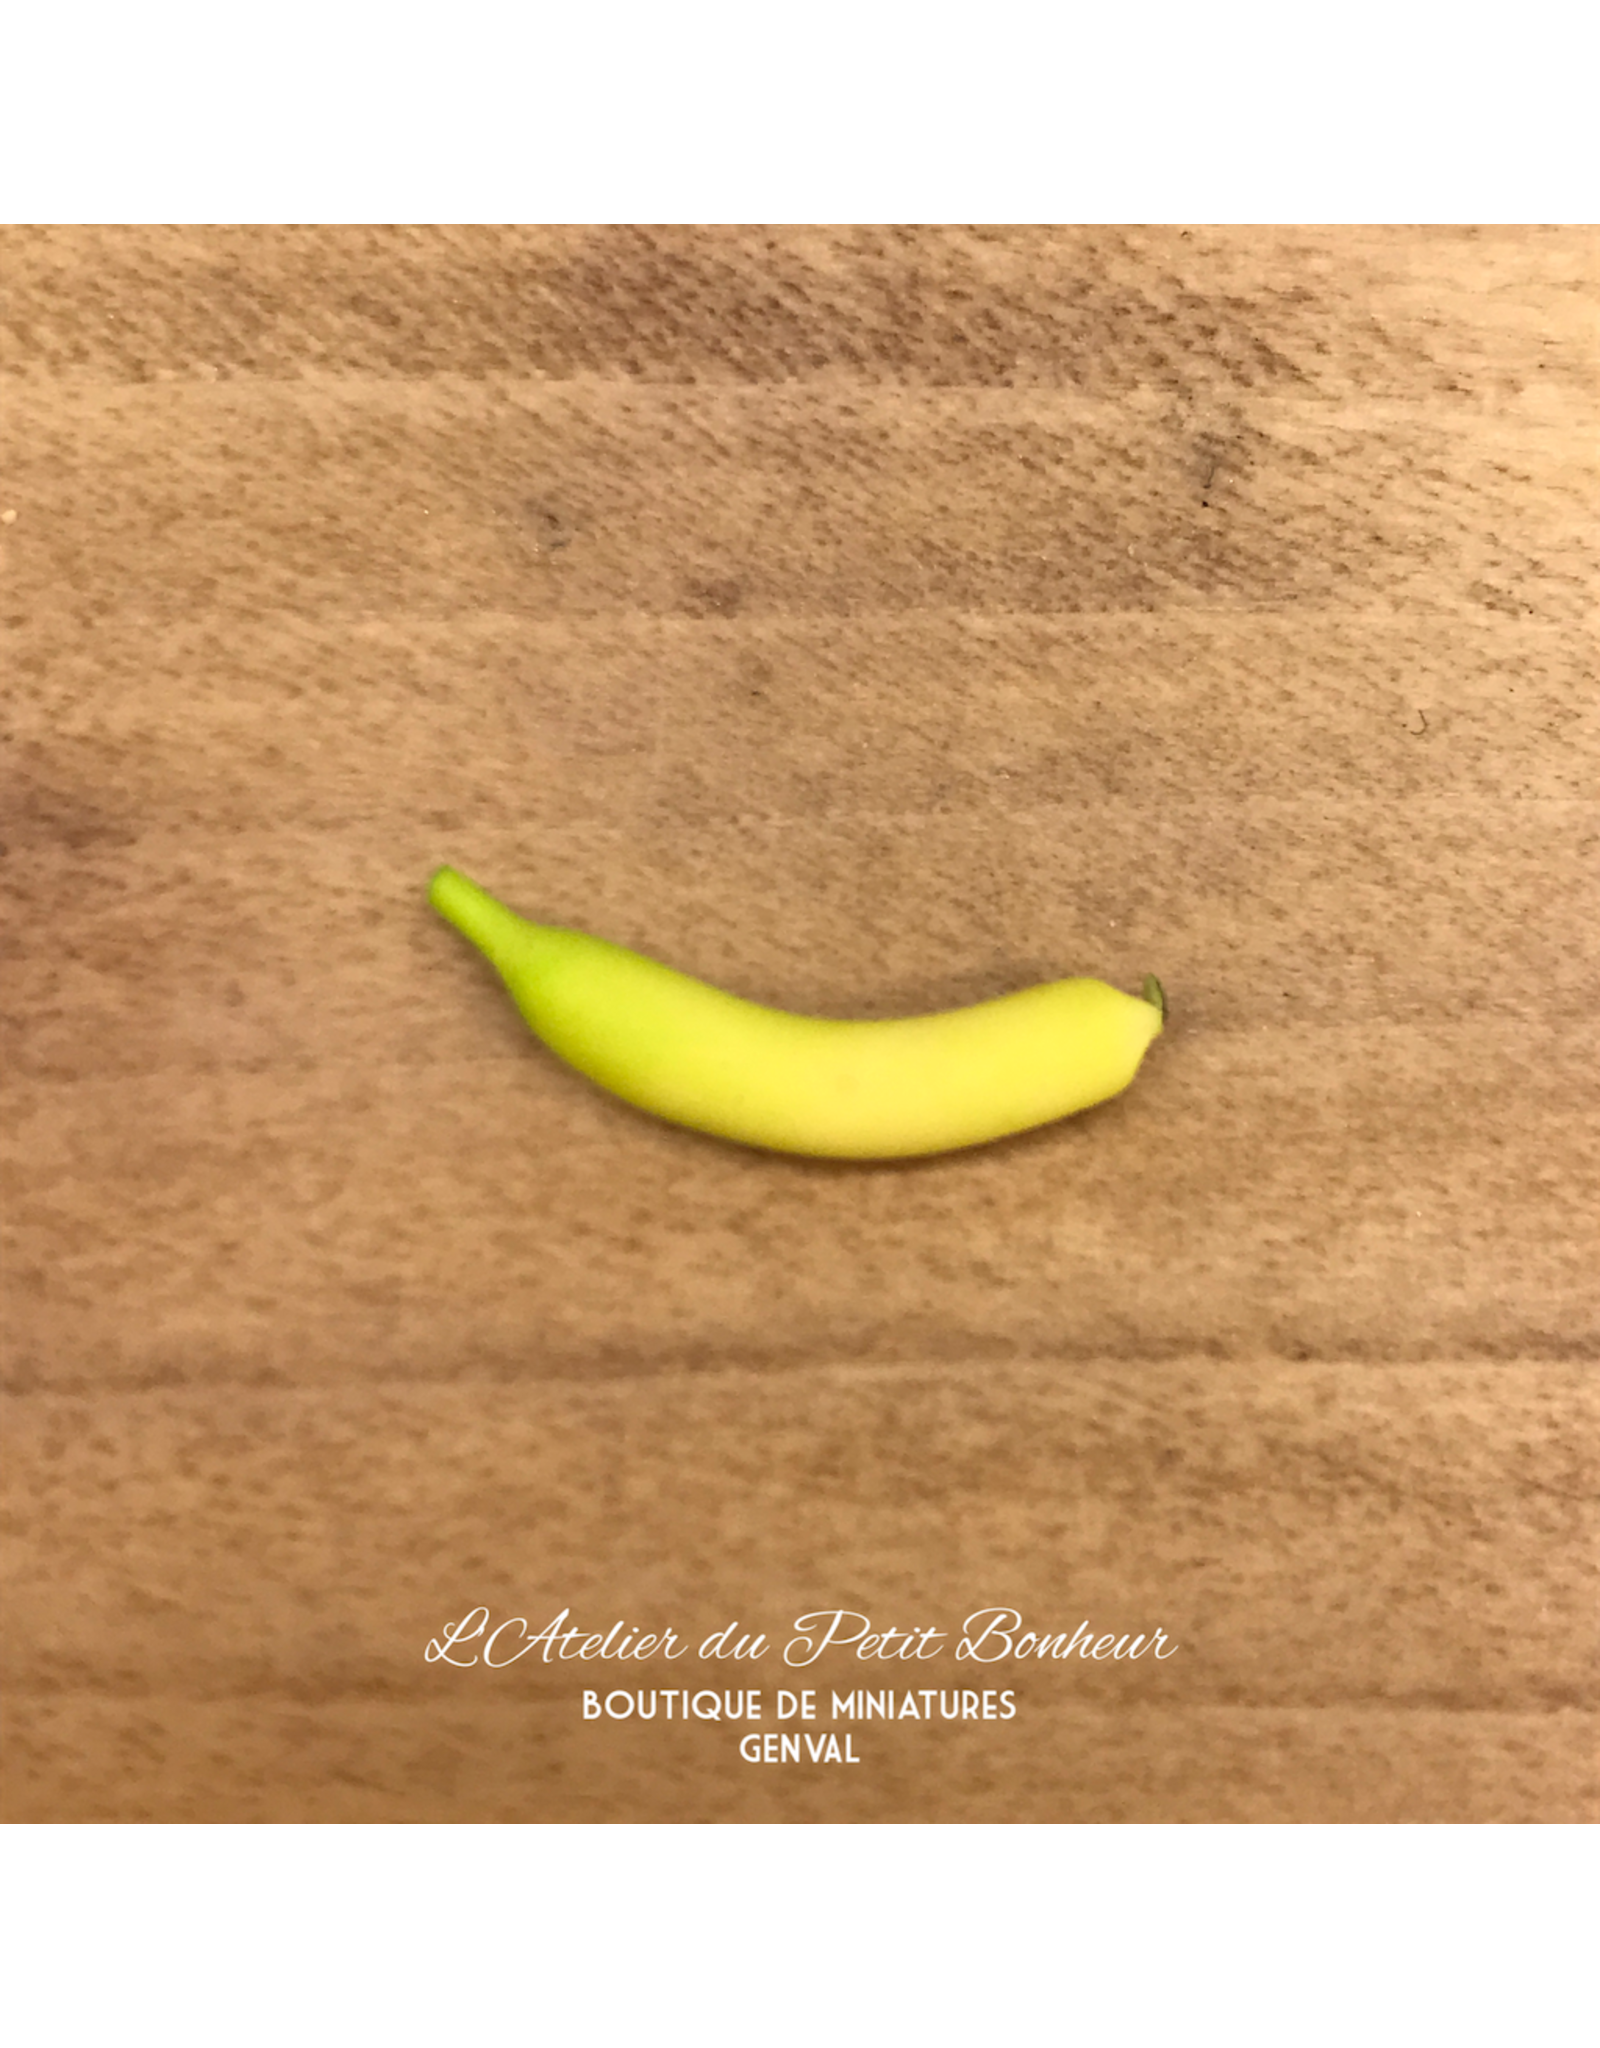 Banane miniature 1:12